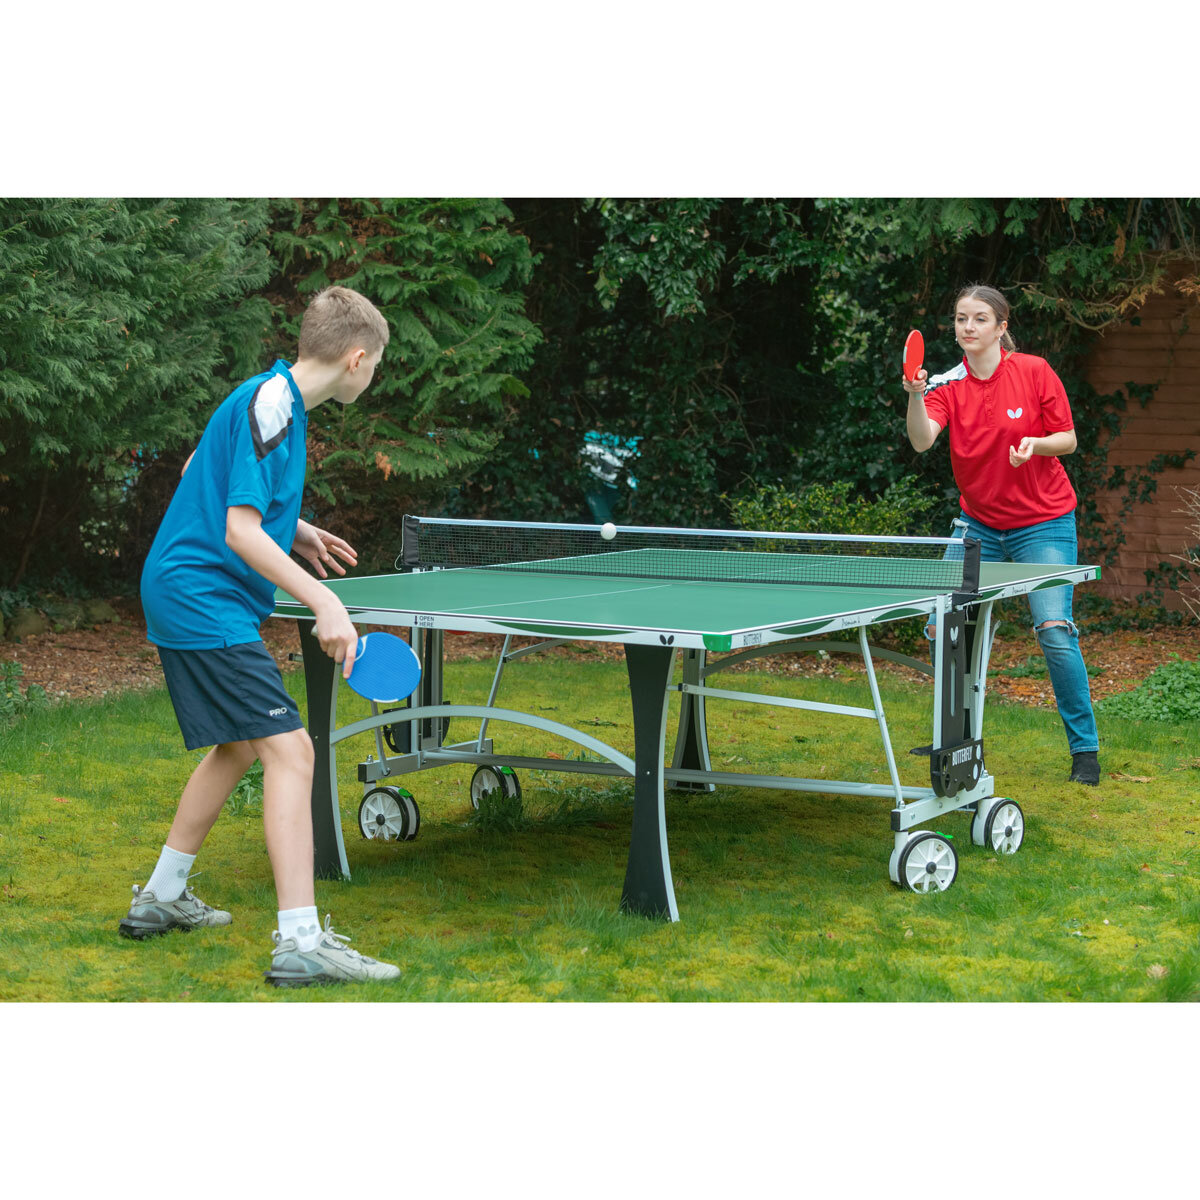 Duque Instalaciones Bronceado Butterfly Premium 4 Outdoor Table Tennis Table | Costco UK